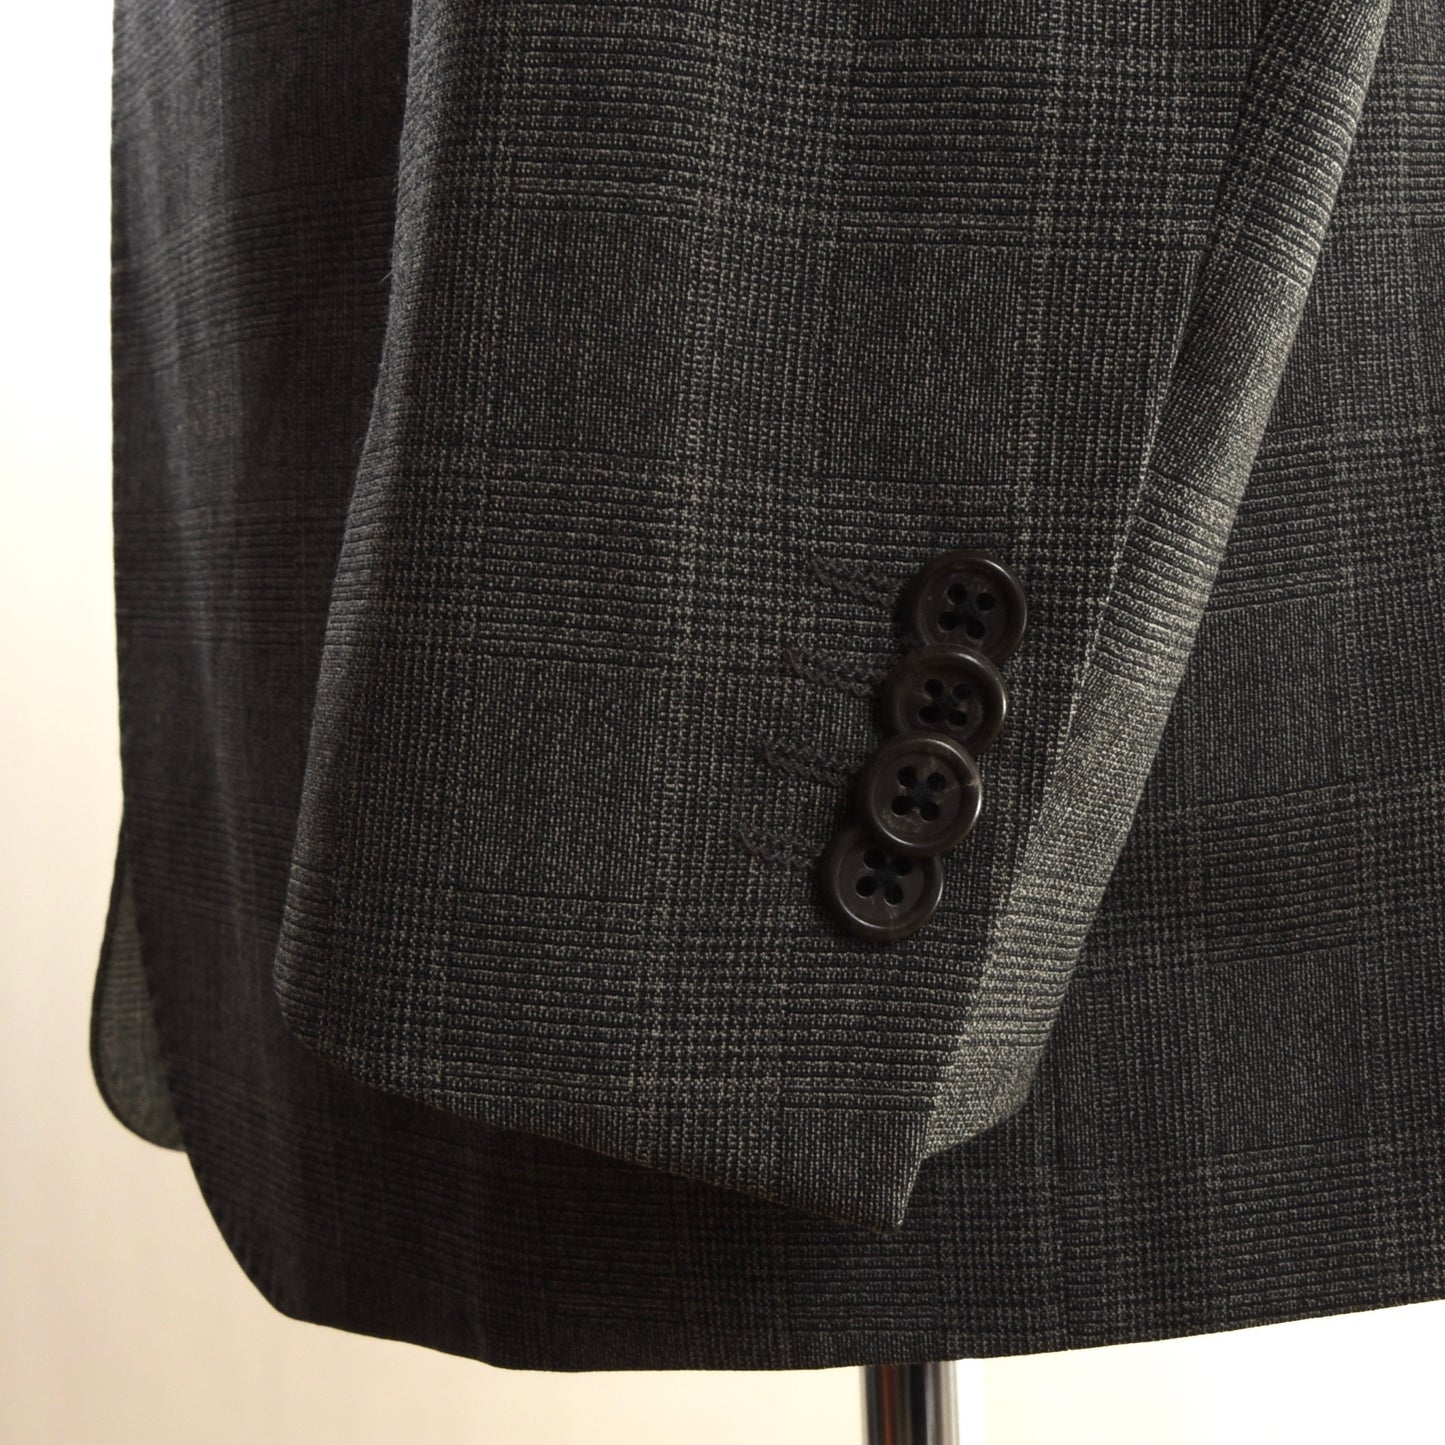 Corneliani Collection Suit Size 50 - Glen Plaid